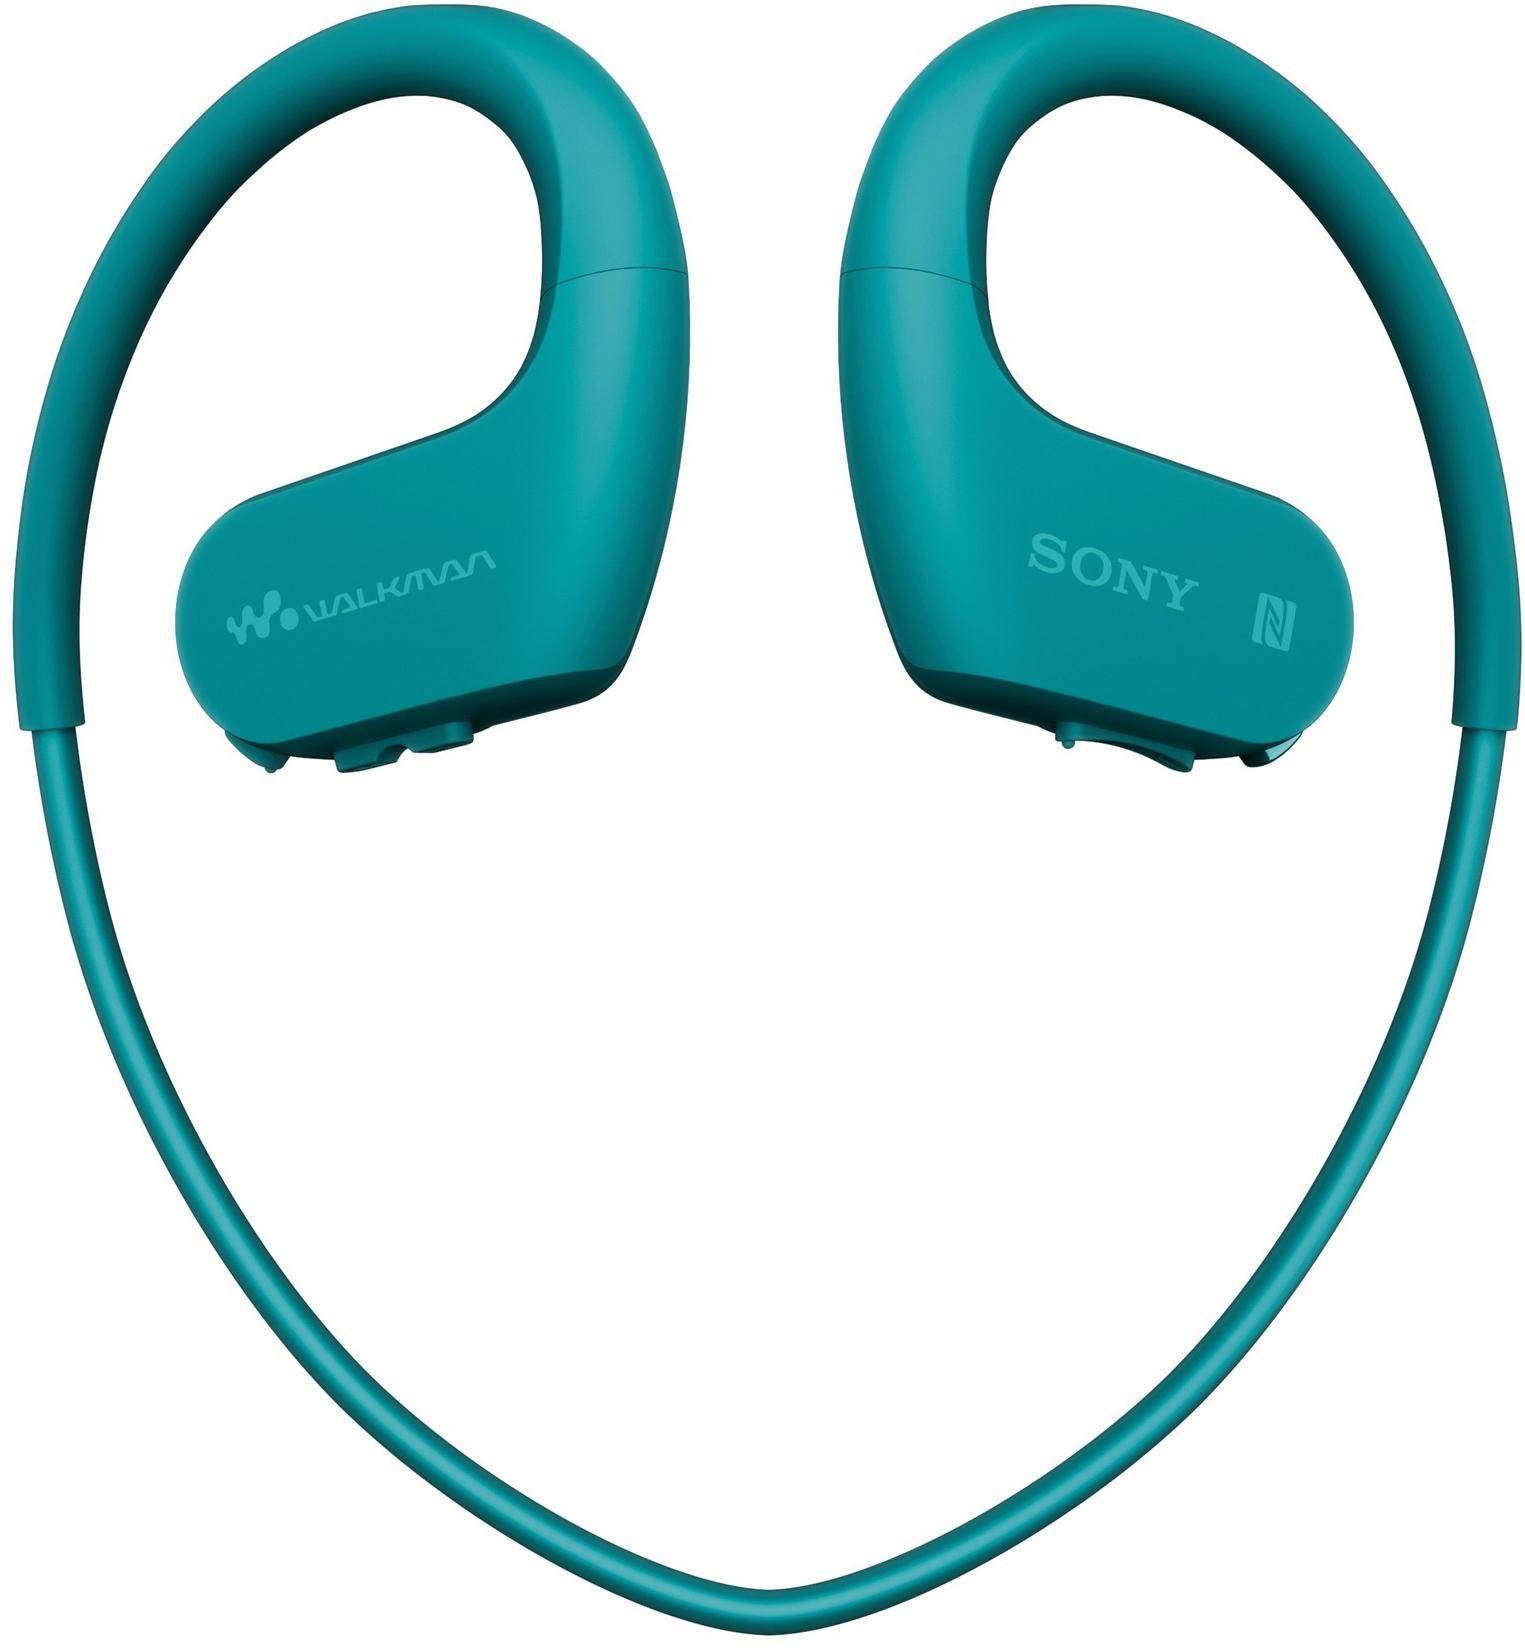 Sony (4GB Speicher) Sport-Kopfhörer NW-WS623 blau